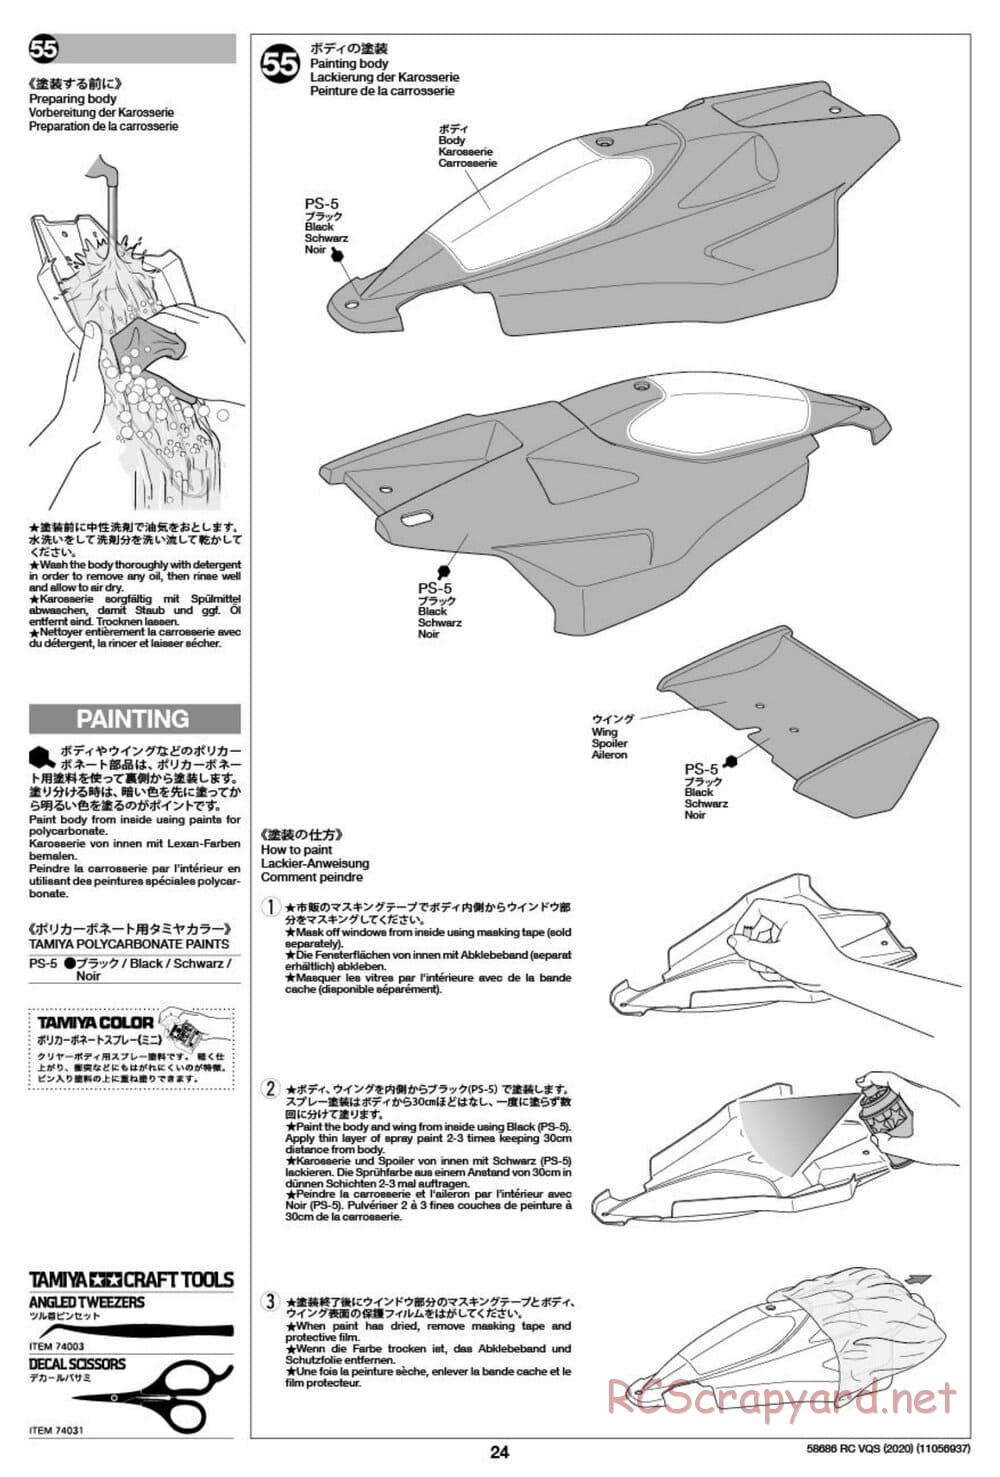 Tamiya - VQS (2020) - AV Chassis - Manual - Page 24